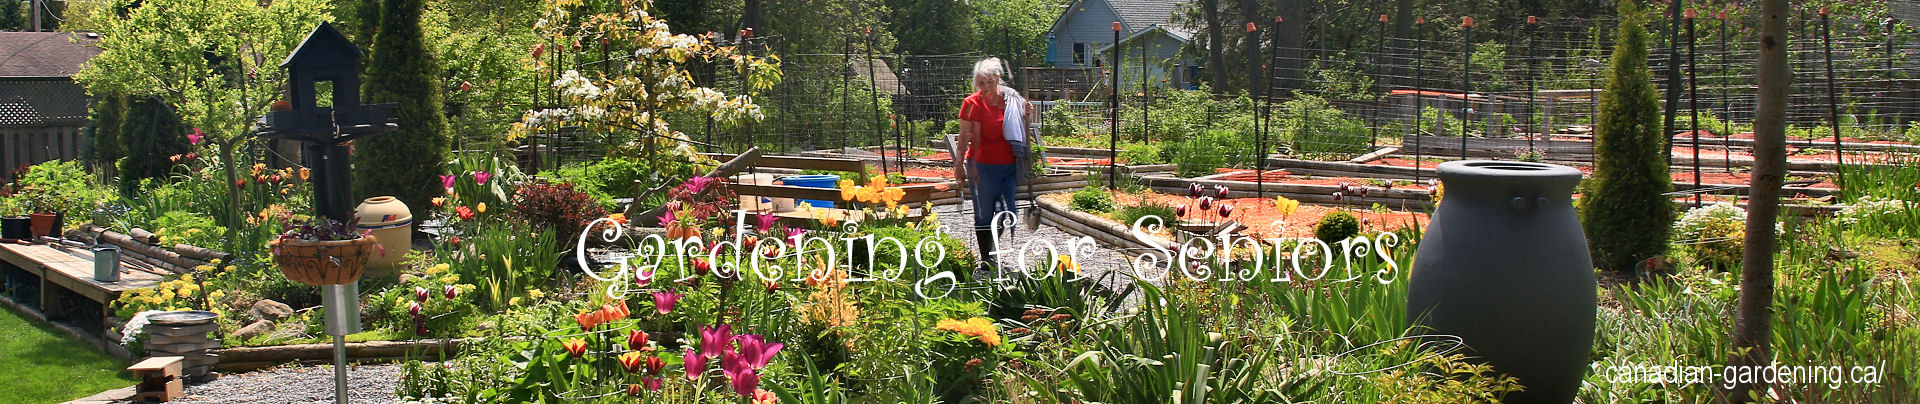 gardening for seniors logo